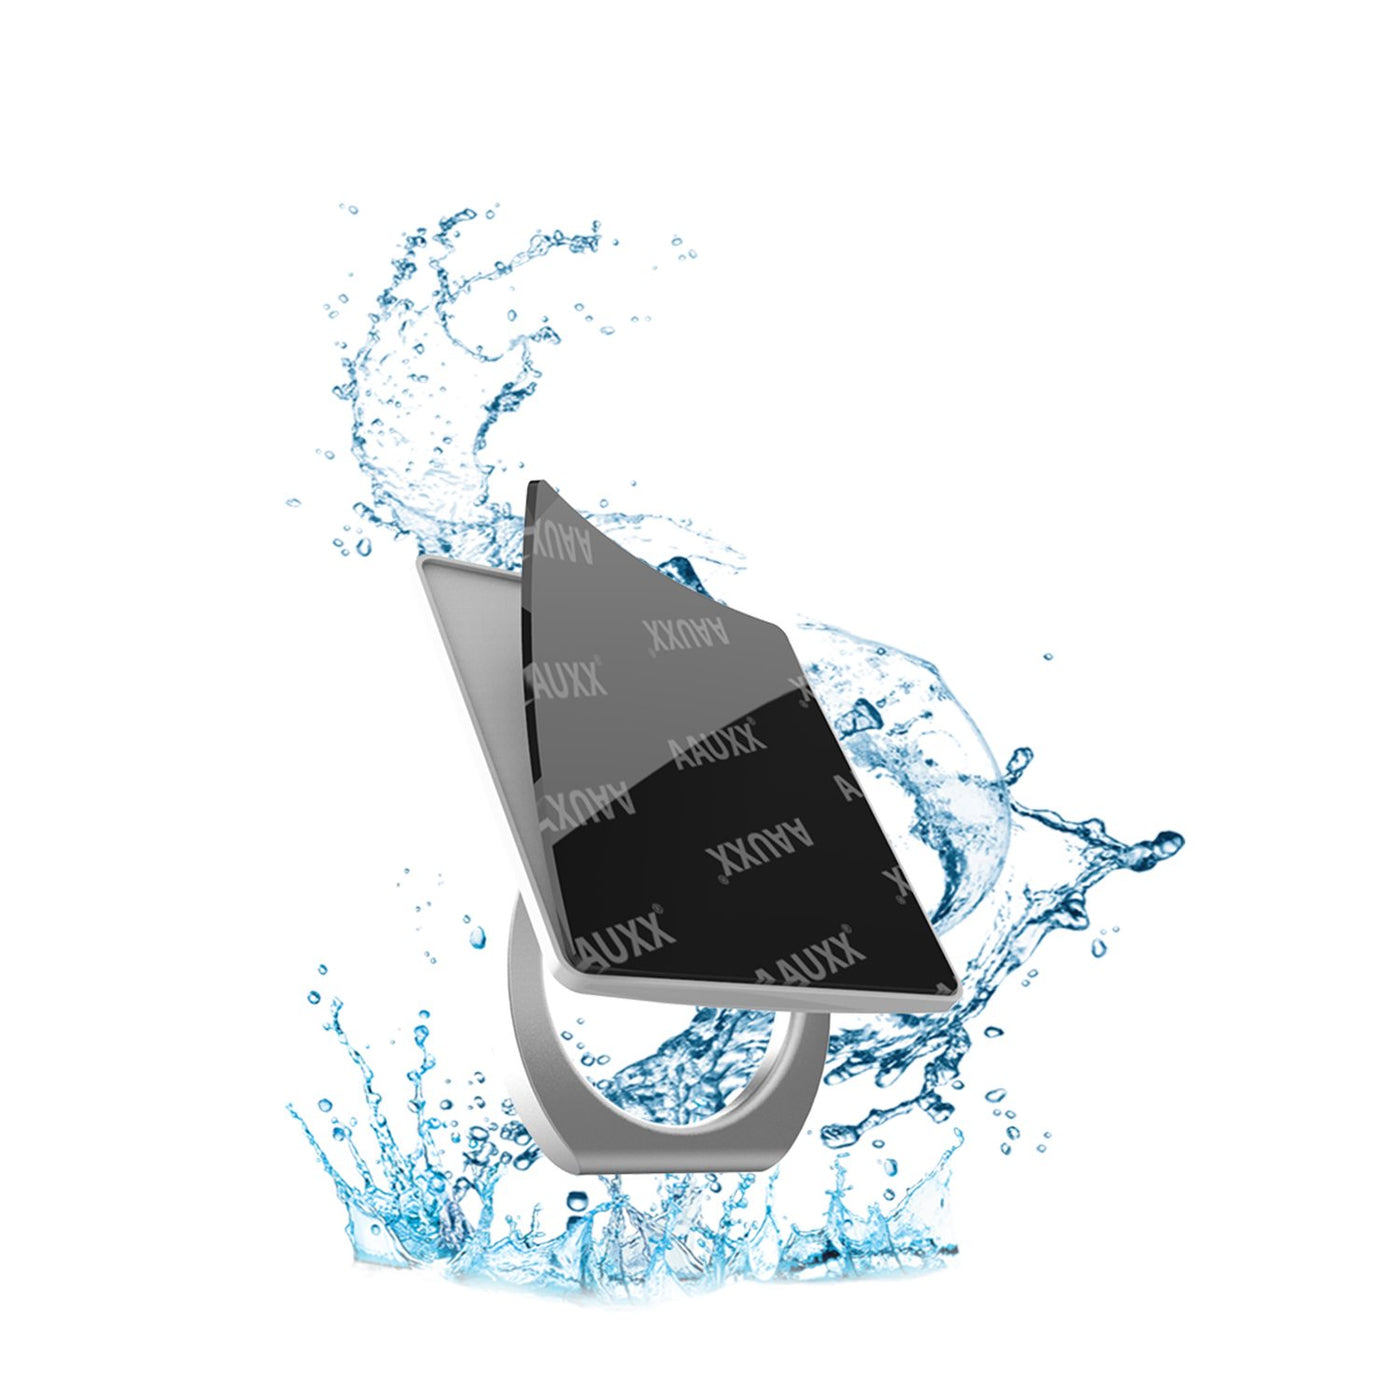 iRing® Original - Poignée et Support pour Téléphone - Colle Réutilisable - Rotation à 360 degrés - Inclinaison à 180 degrés - Noir Mat